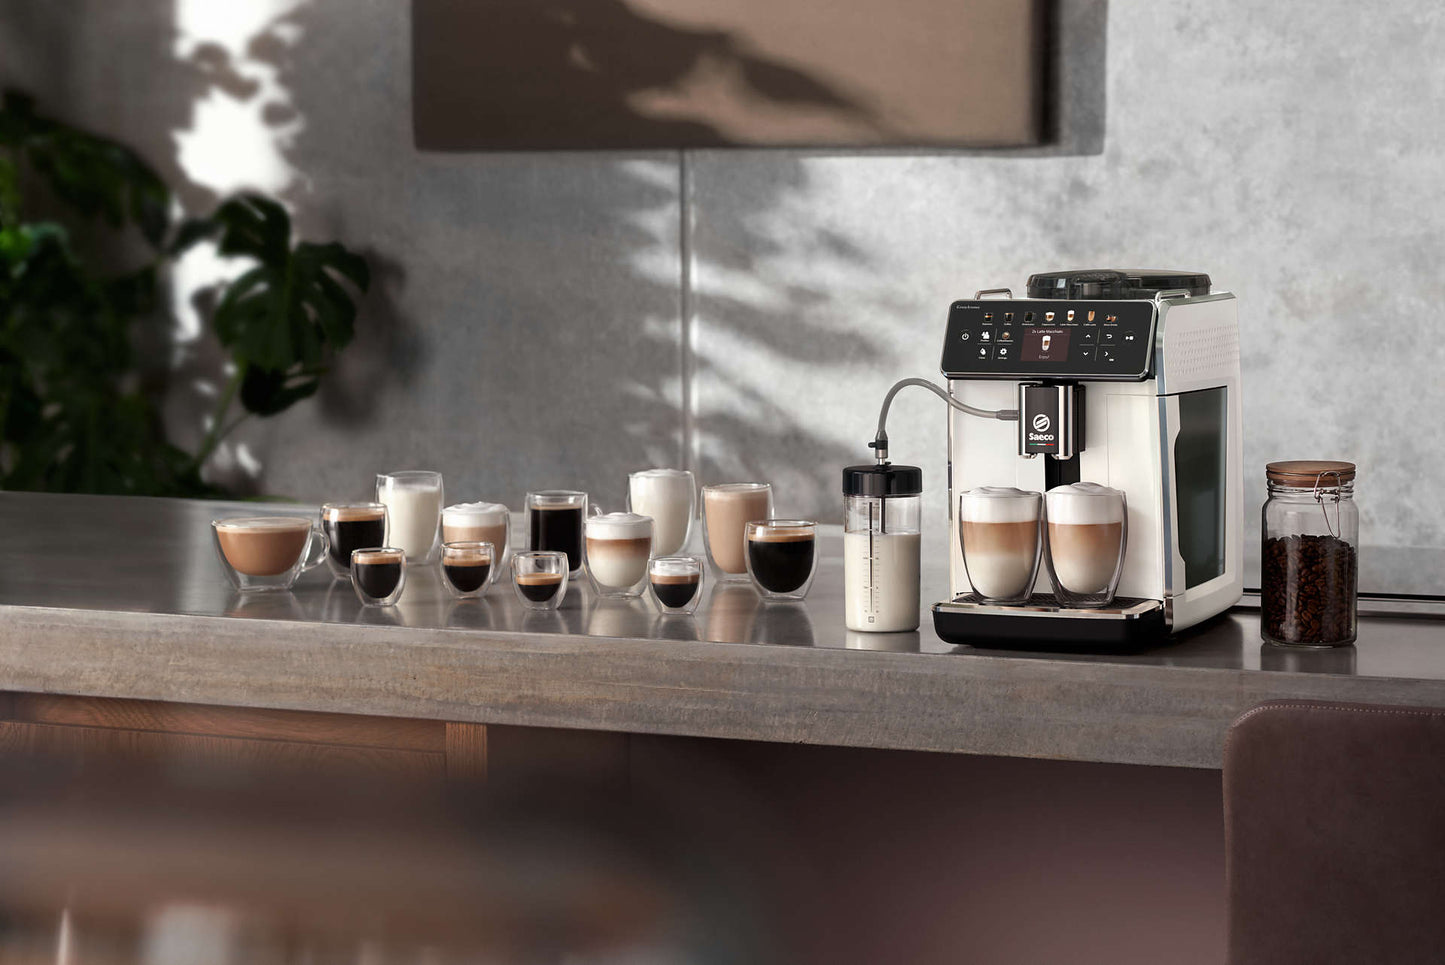 Philips Saeco GranAroma Fully Automatic Espresso Machine - White- SM6580/20